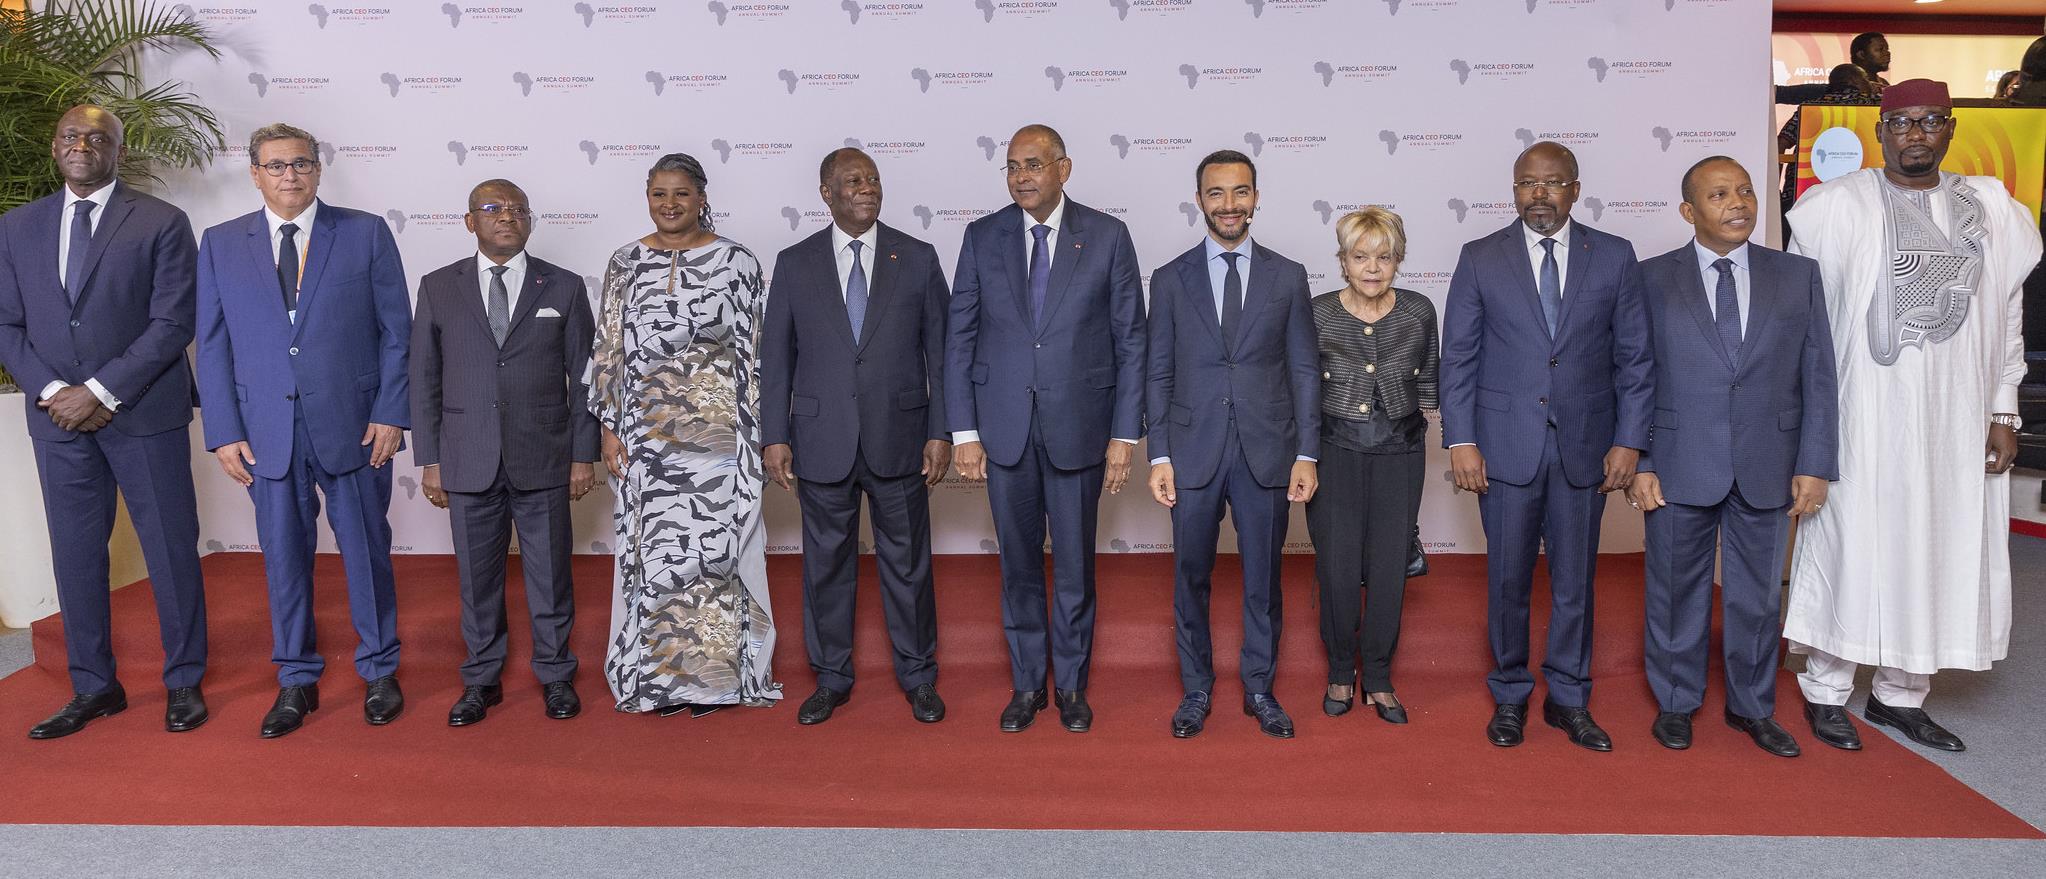 Africa CEO Forum : Akhannouch met l'accent sur les réalisations accomplies au Maroc sous le leadership du Roi Mohammed VI